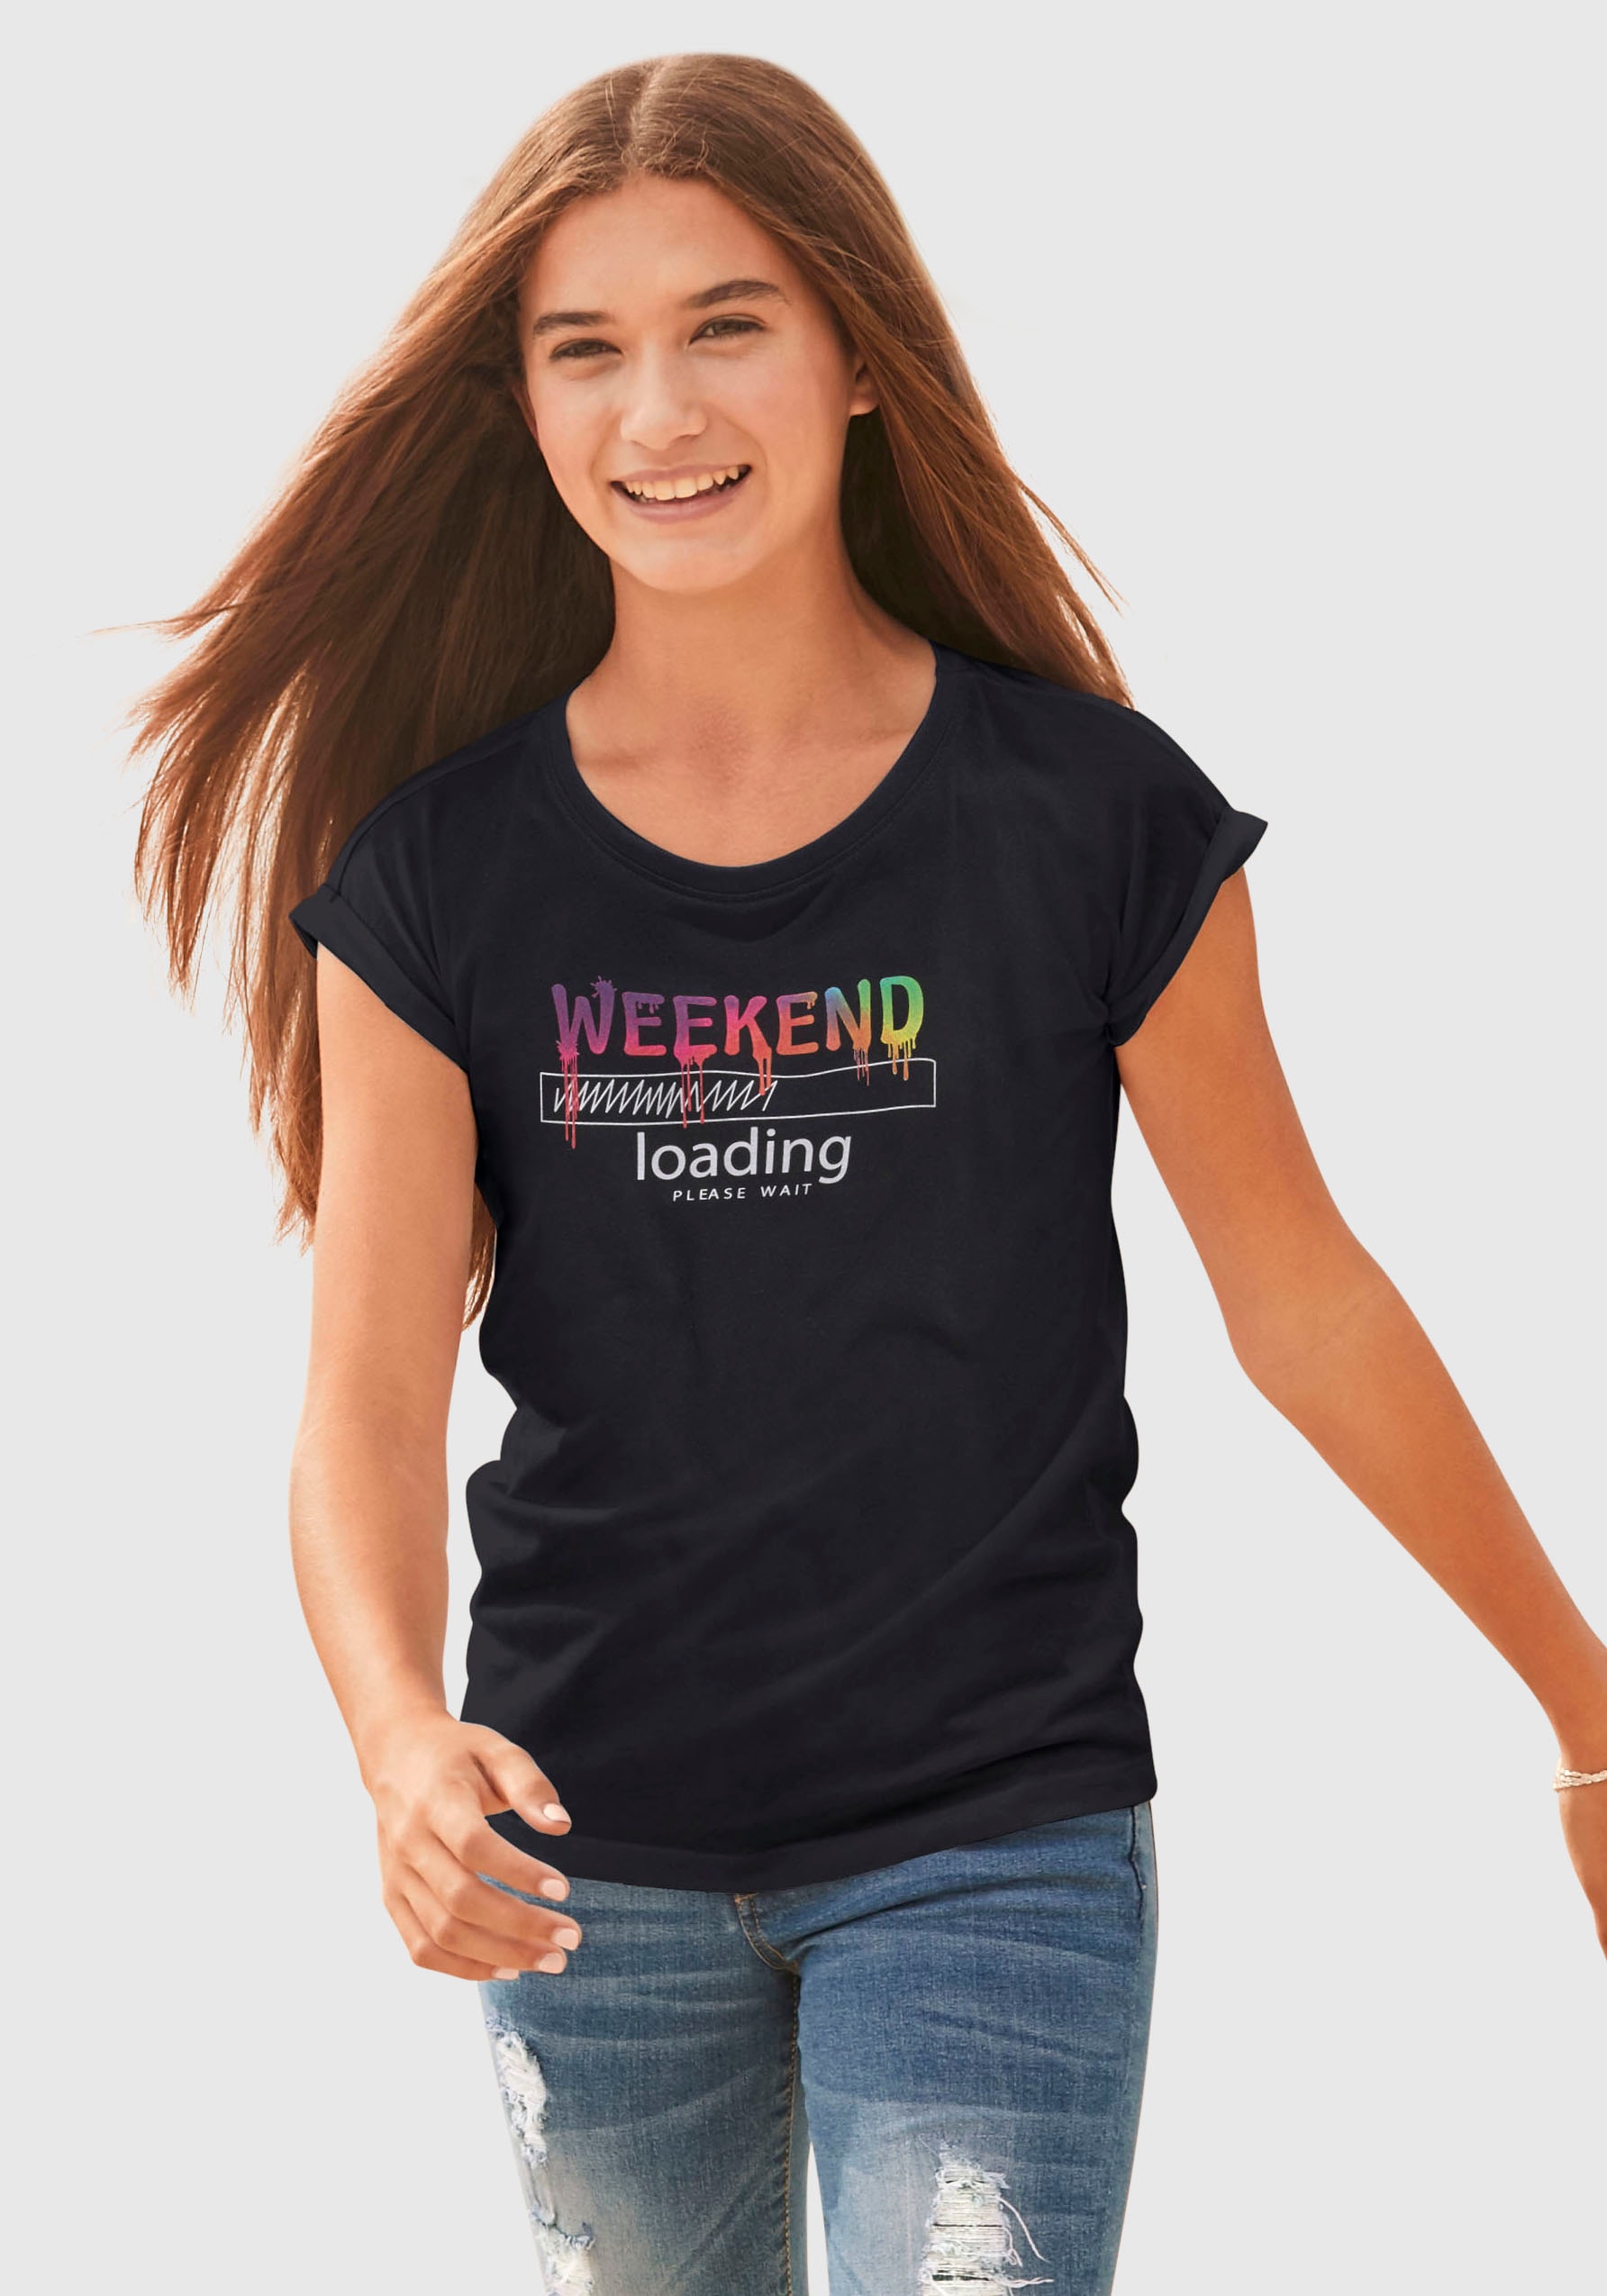 legerer | Regenbogen-Druckfarben Jelmoli-Versand weiter Form, unterschiedlich T-Shirt loading...please kaufen ✵ »WEEKEND in sind KIDSWORLD wait«, online